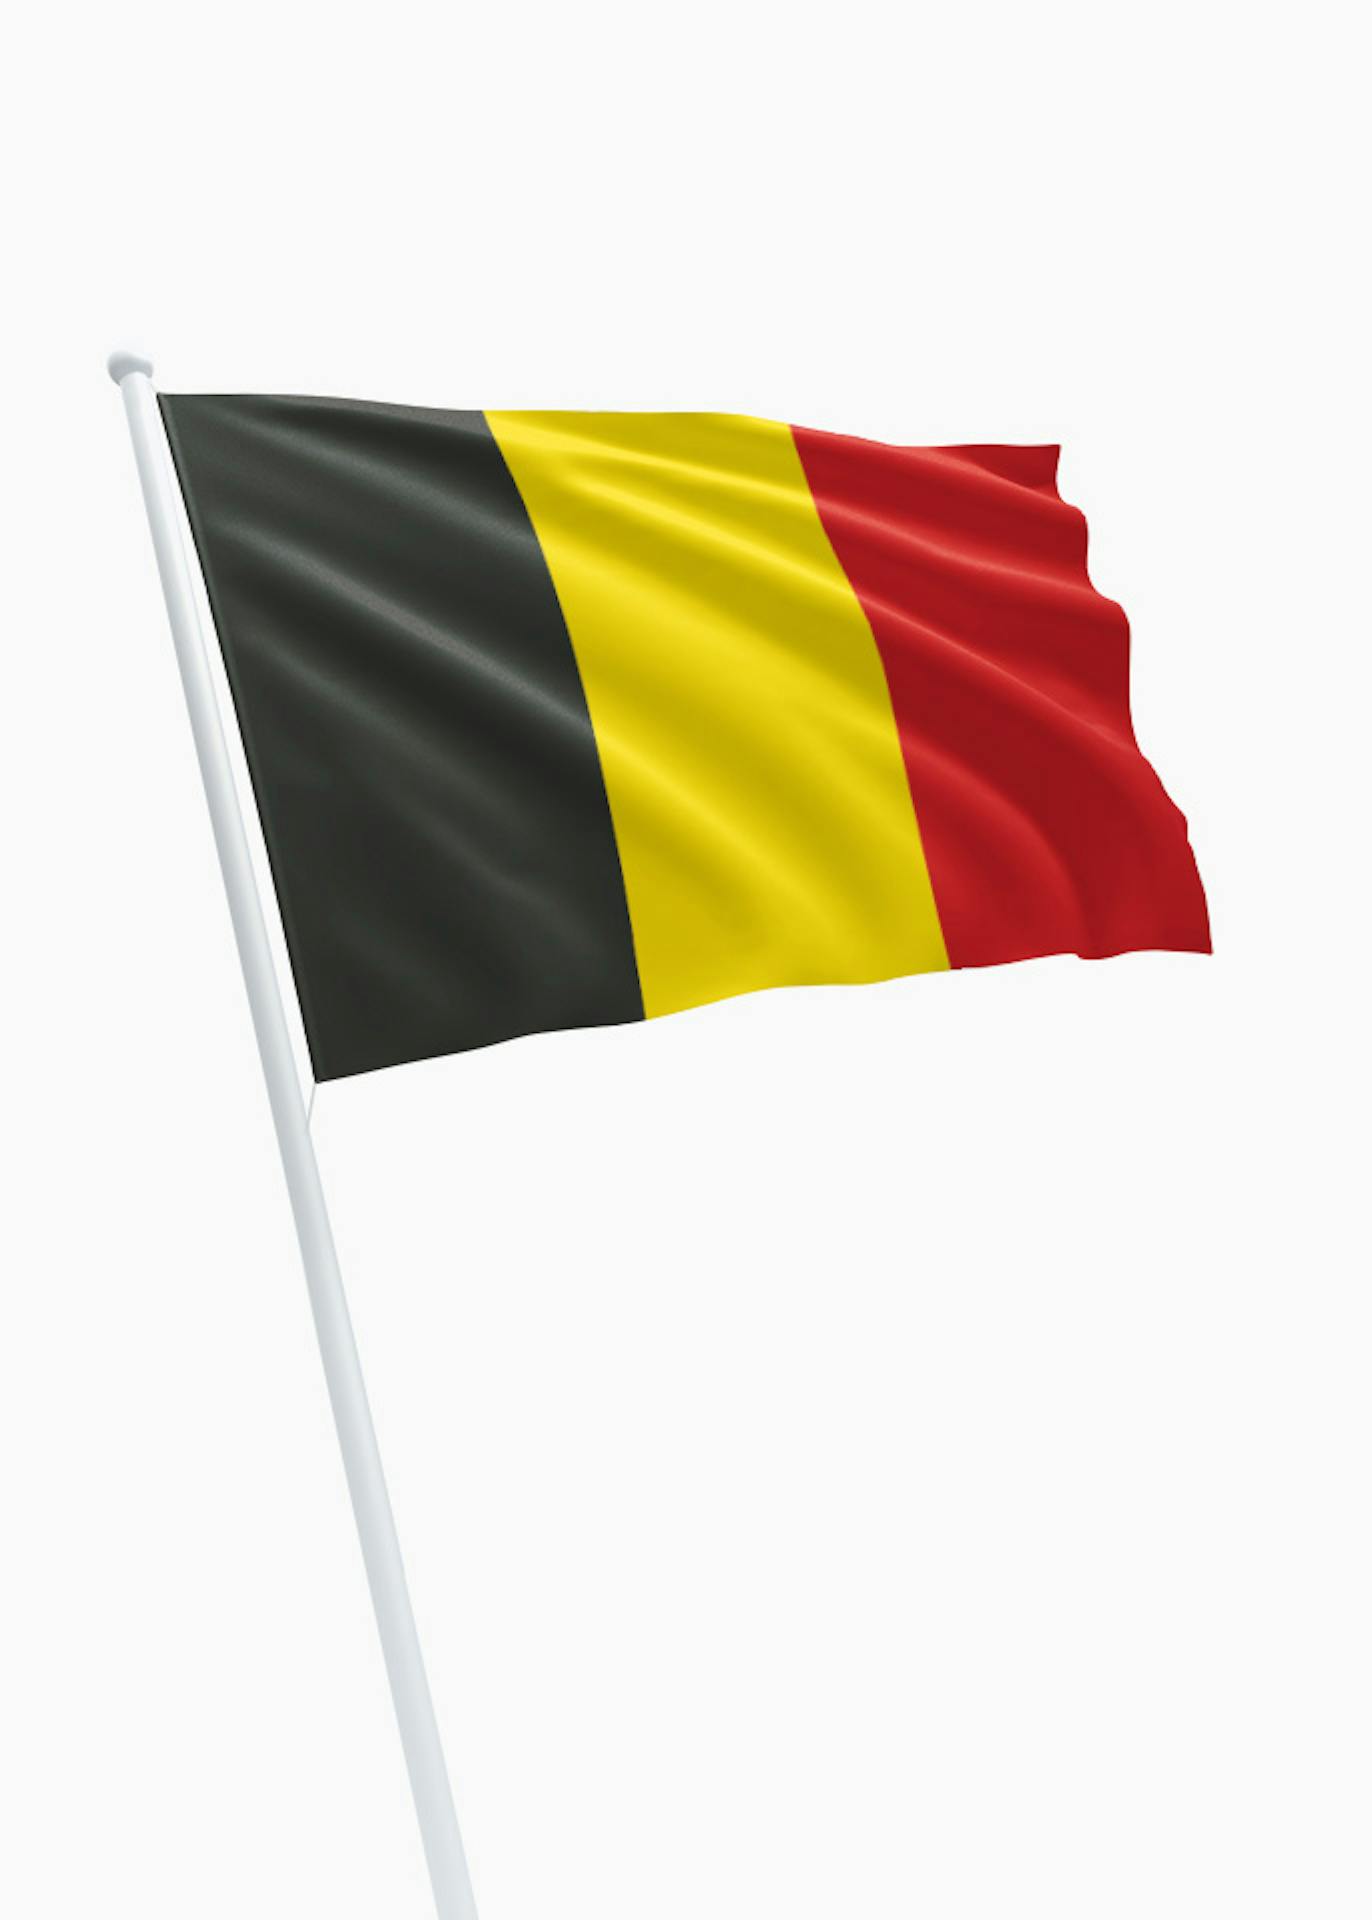 Worden Paradox koppeling Belgische vlag kopen? Dé specialist in vlaggen! - DVC